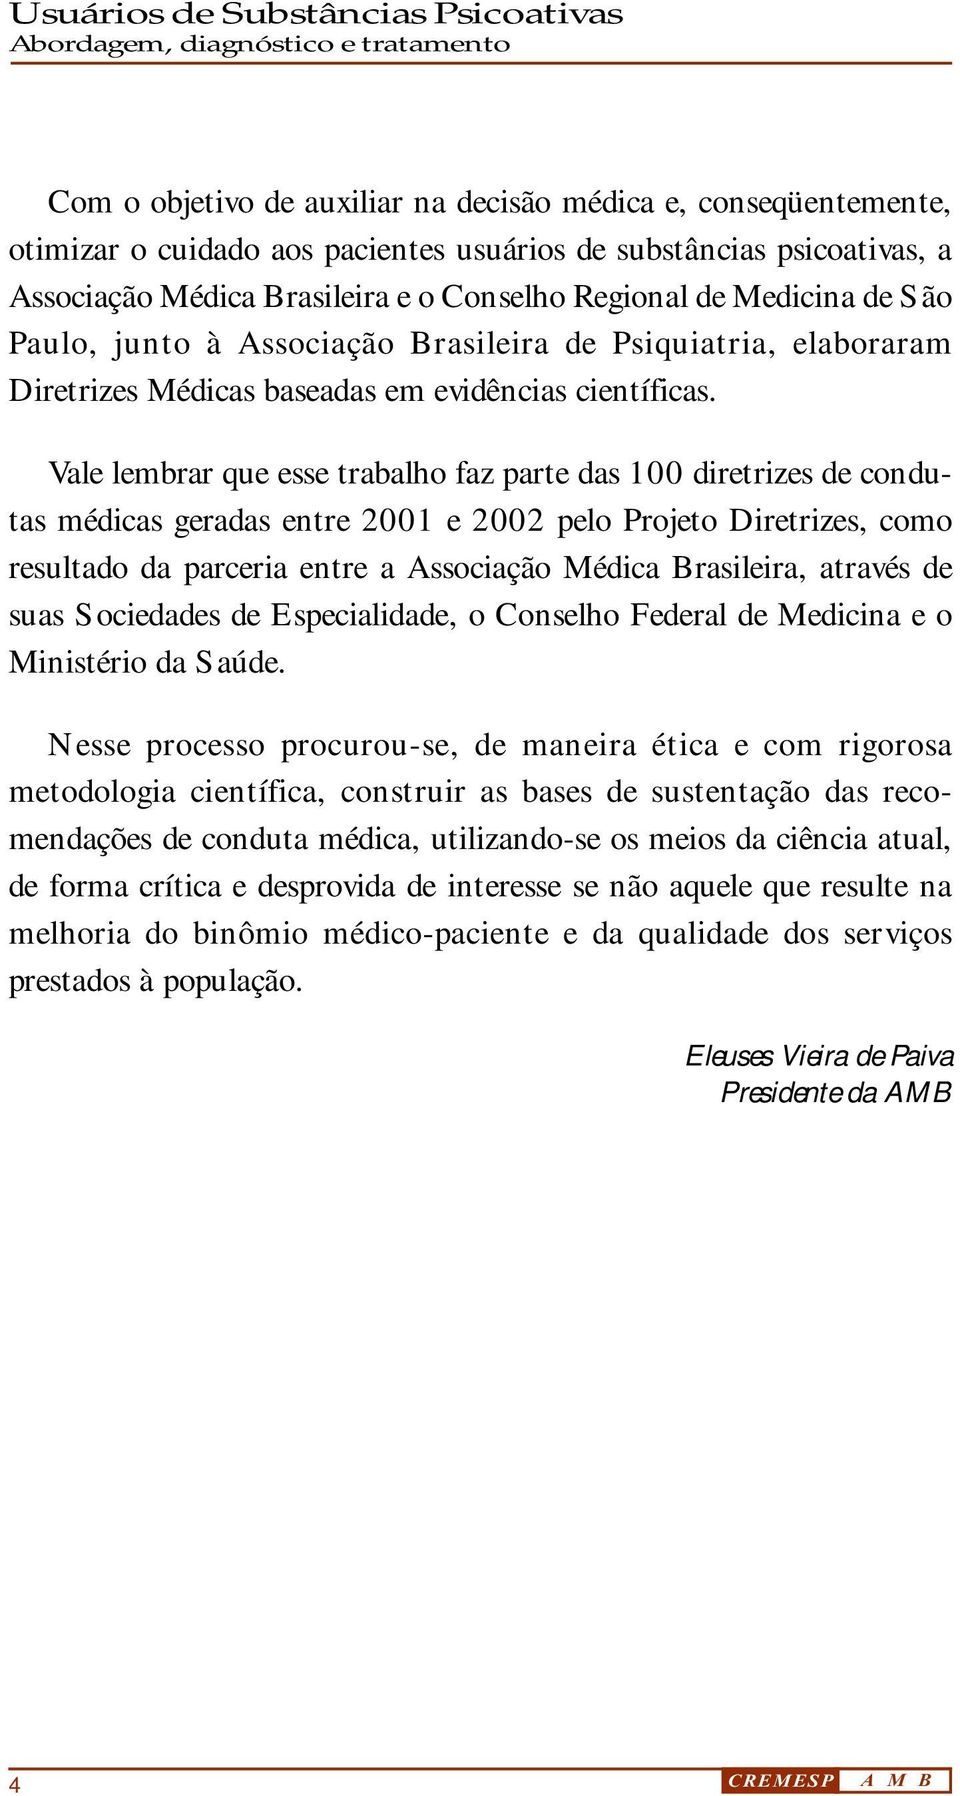 Vale lembrar que esse trabalho faz parte das 100 diretrizes de condutas médicas geradas entre 2001 e 2002 pelo Projeto Diretrizes, como resultado da parceria entre a Associação Médica Brasileira,